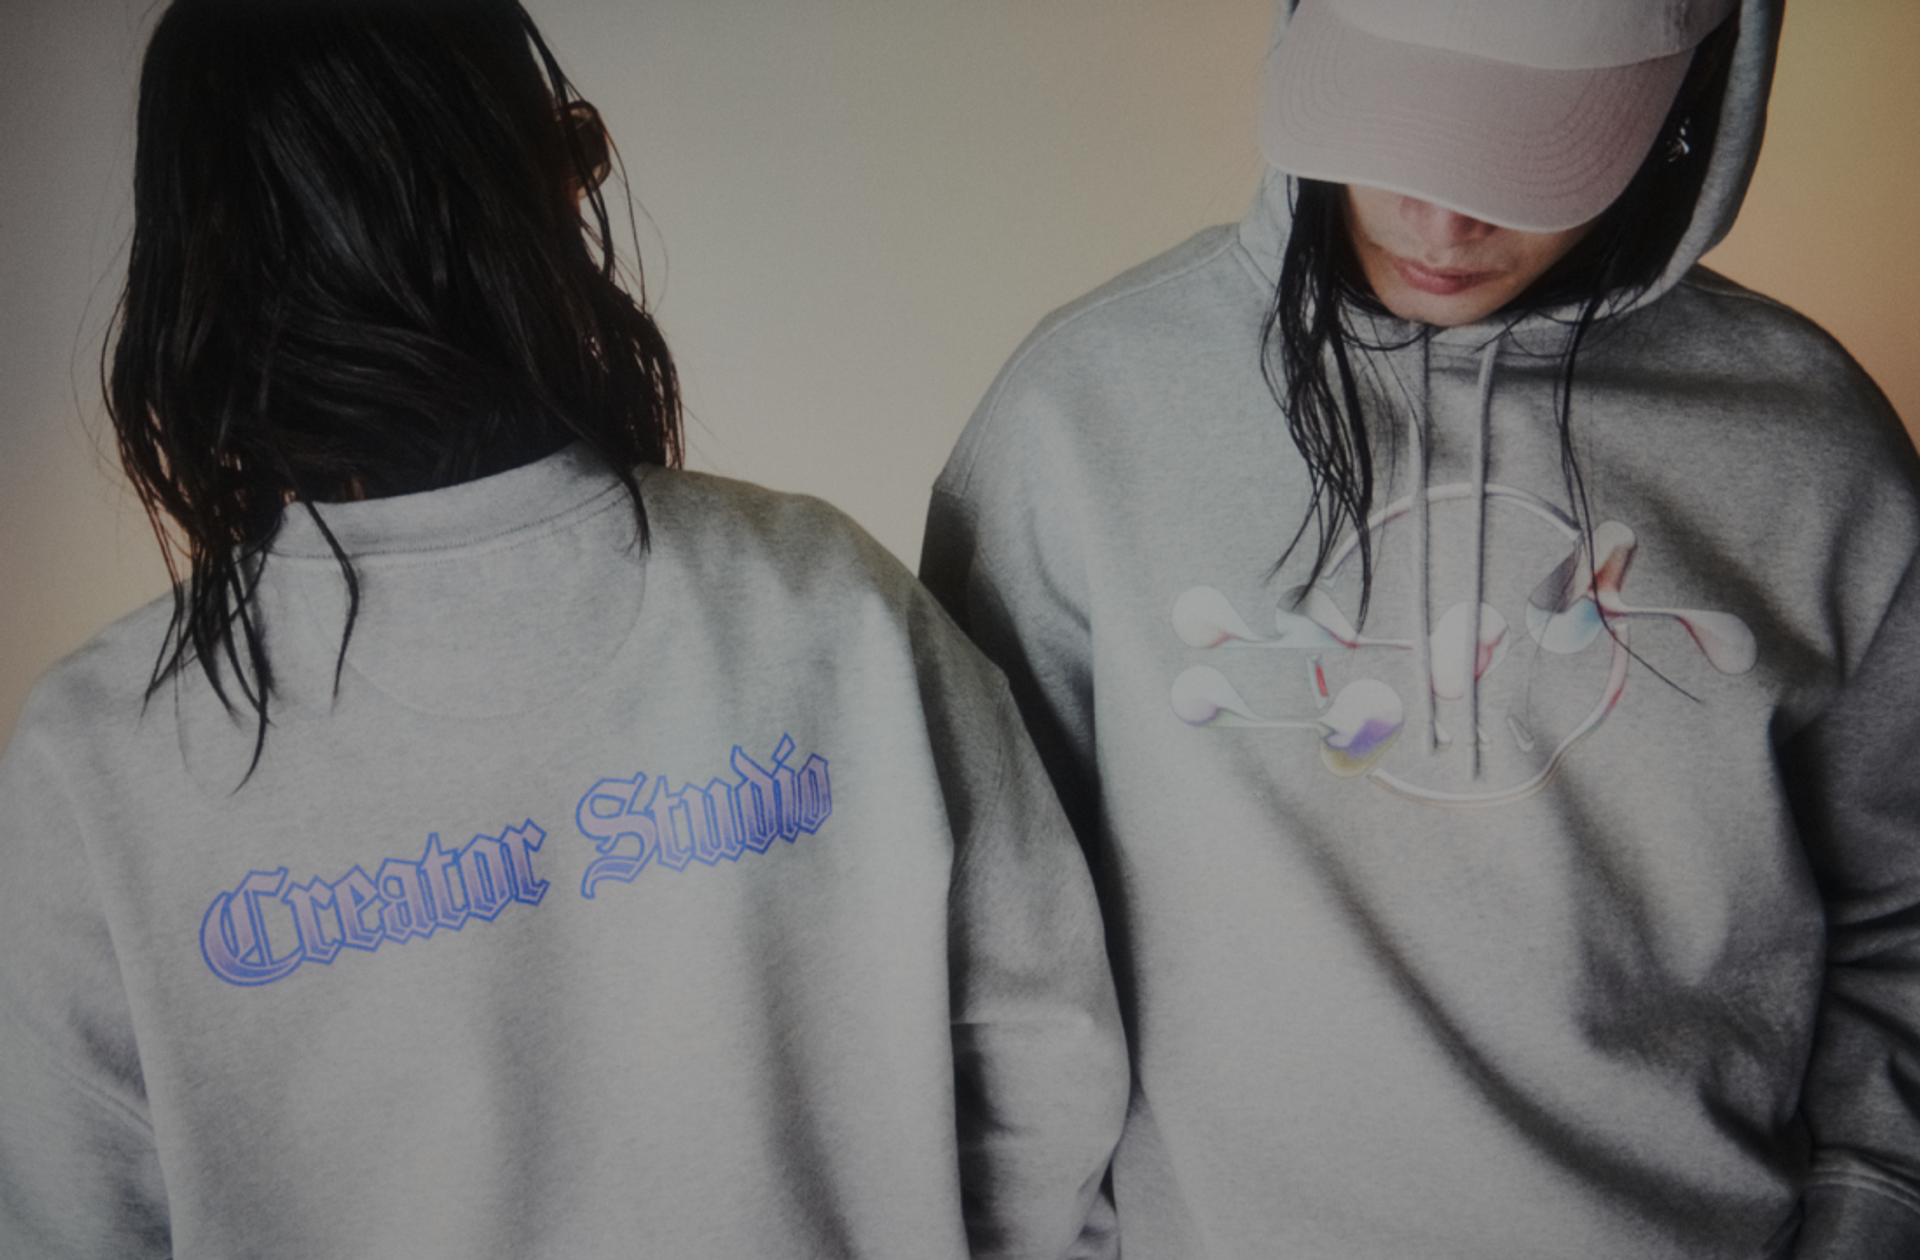 Two girls wear Creator Studio custom printed hoodies